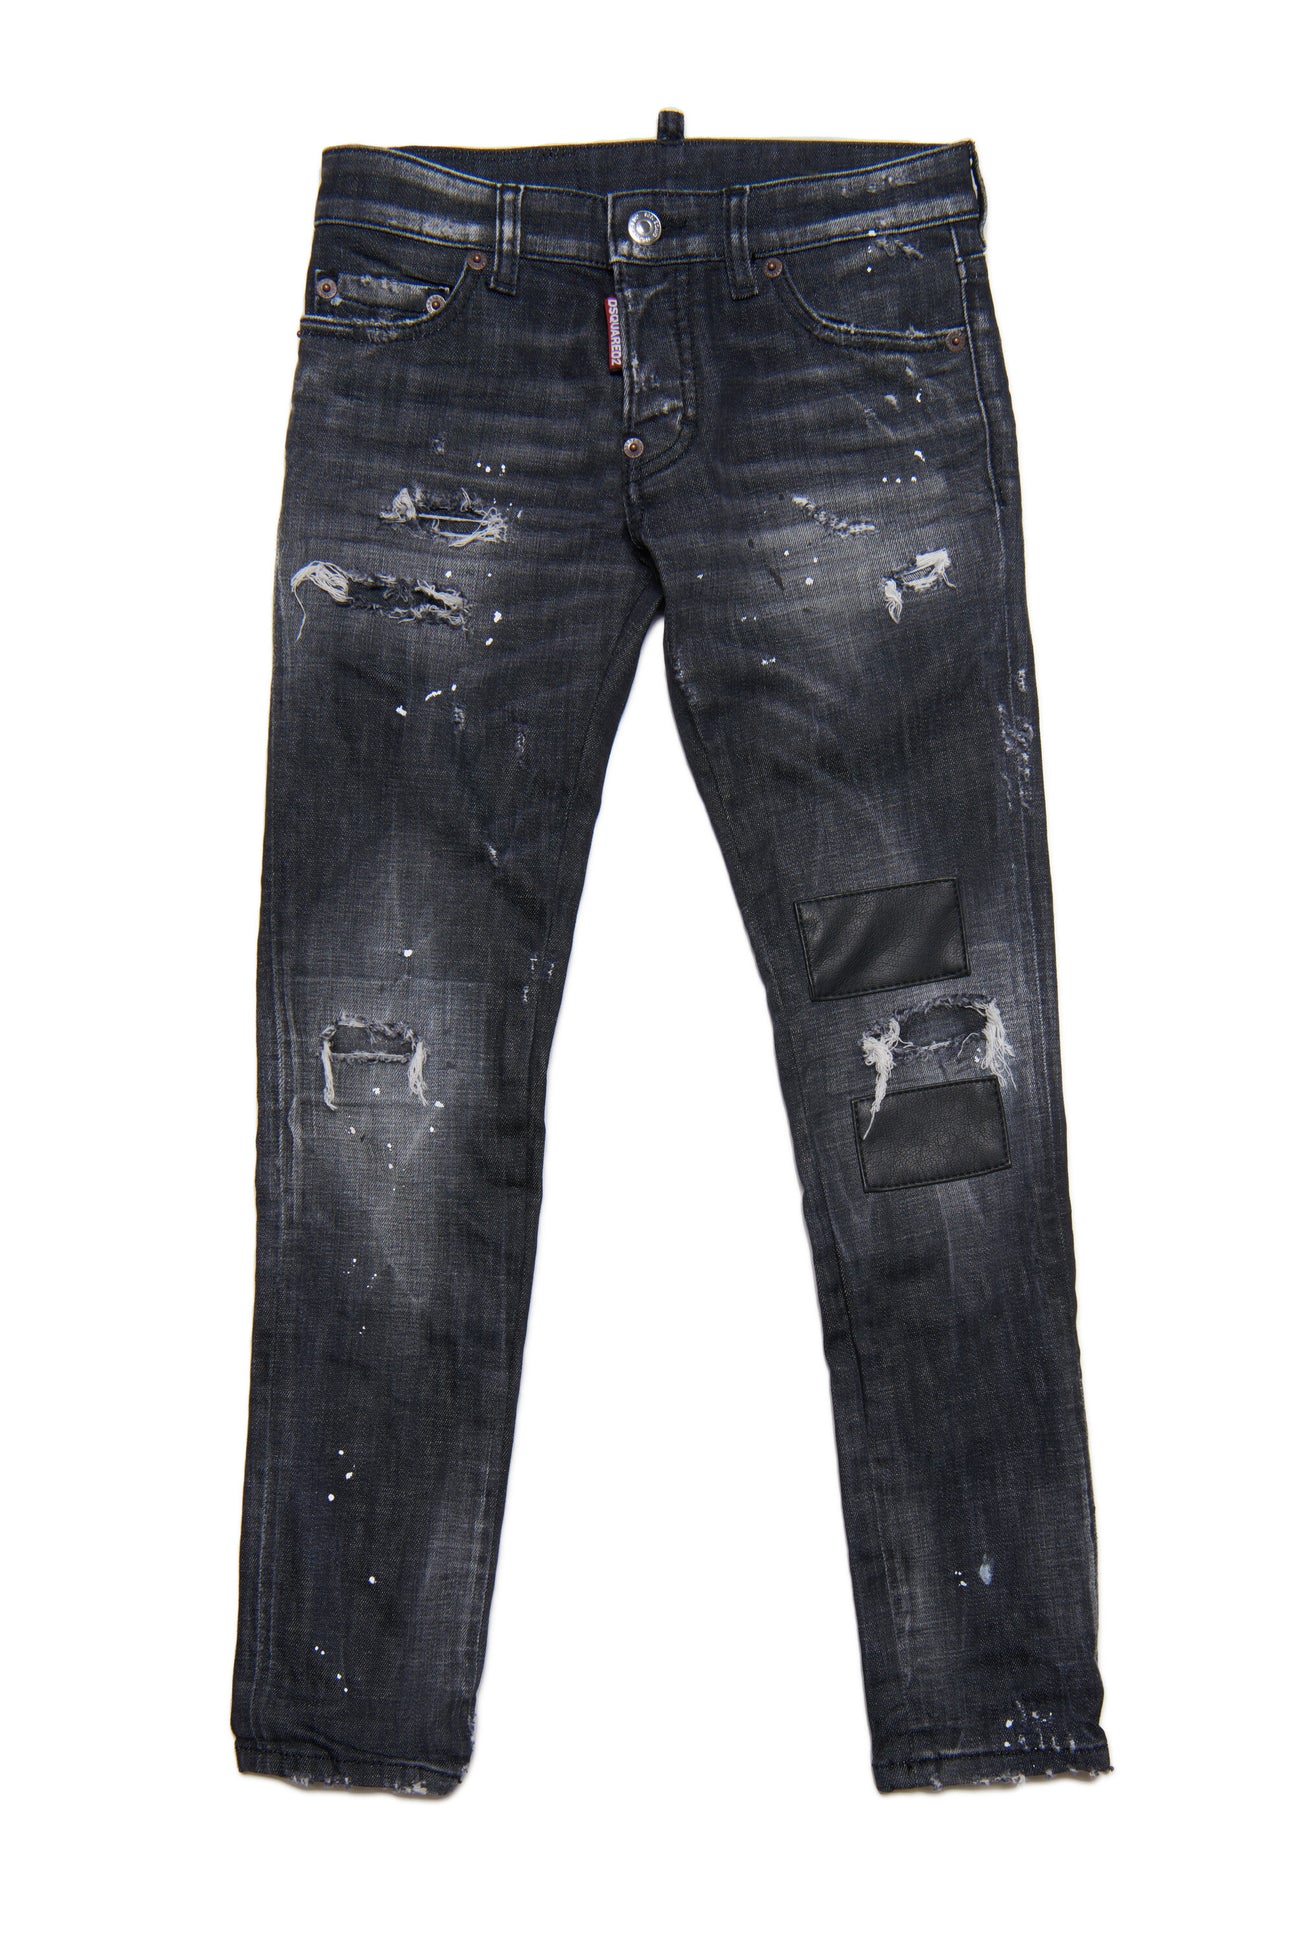 Jeans Slim straight nero sfumato con patch in pelle e macchie 